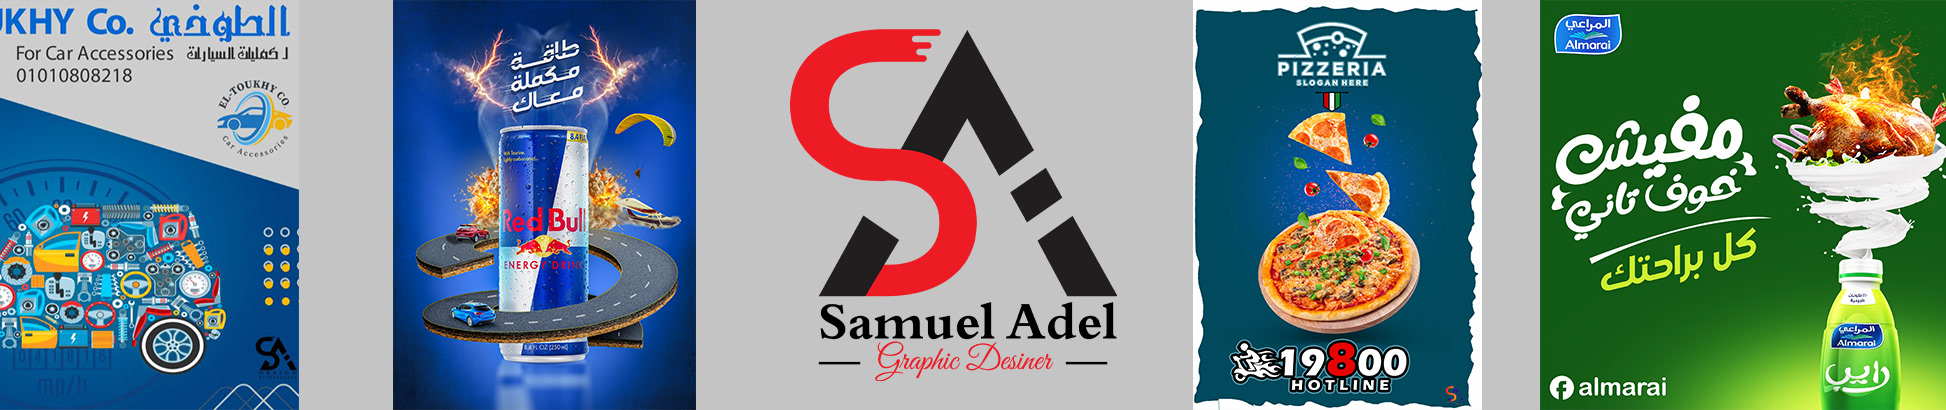 Banner de perfil de Samuel Adel